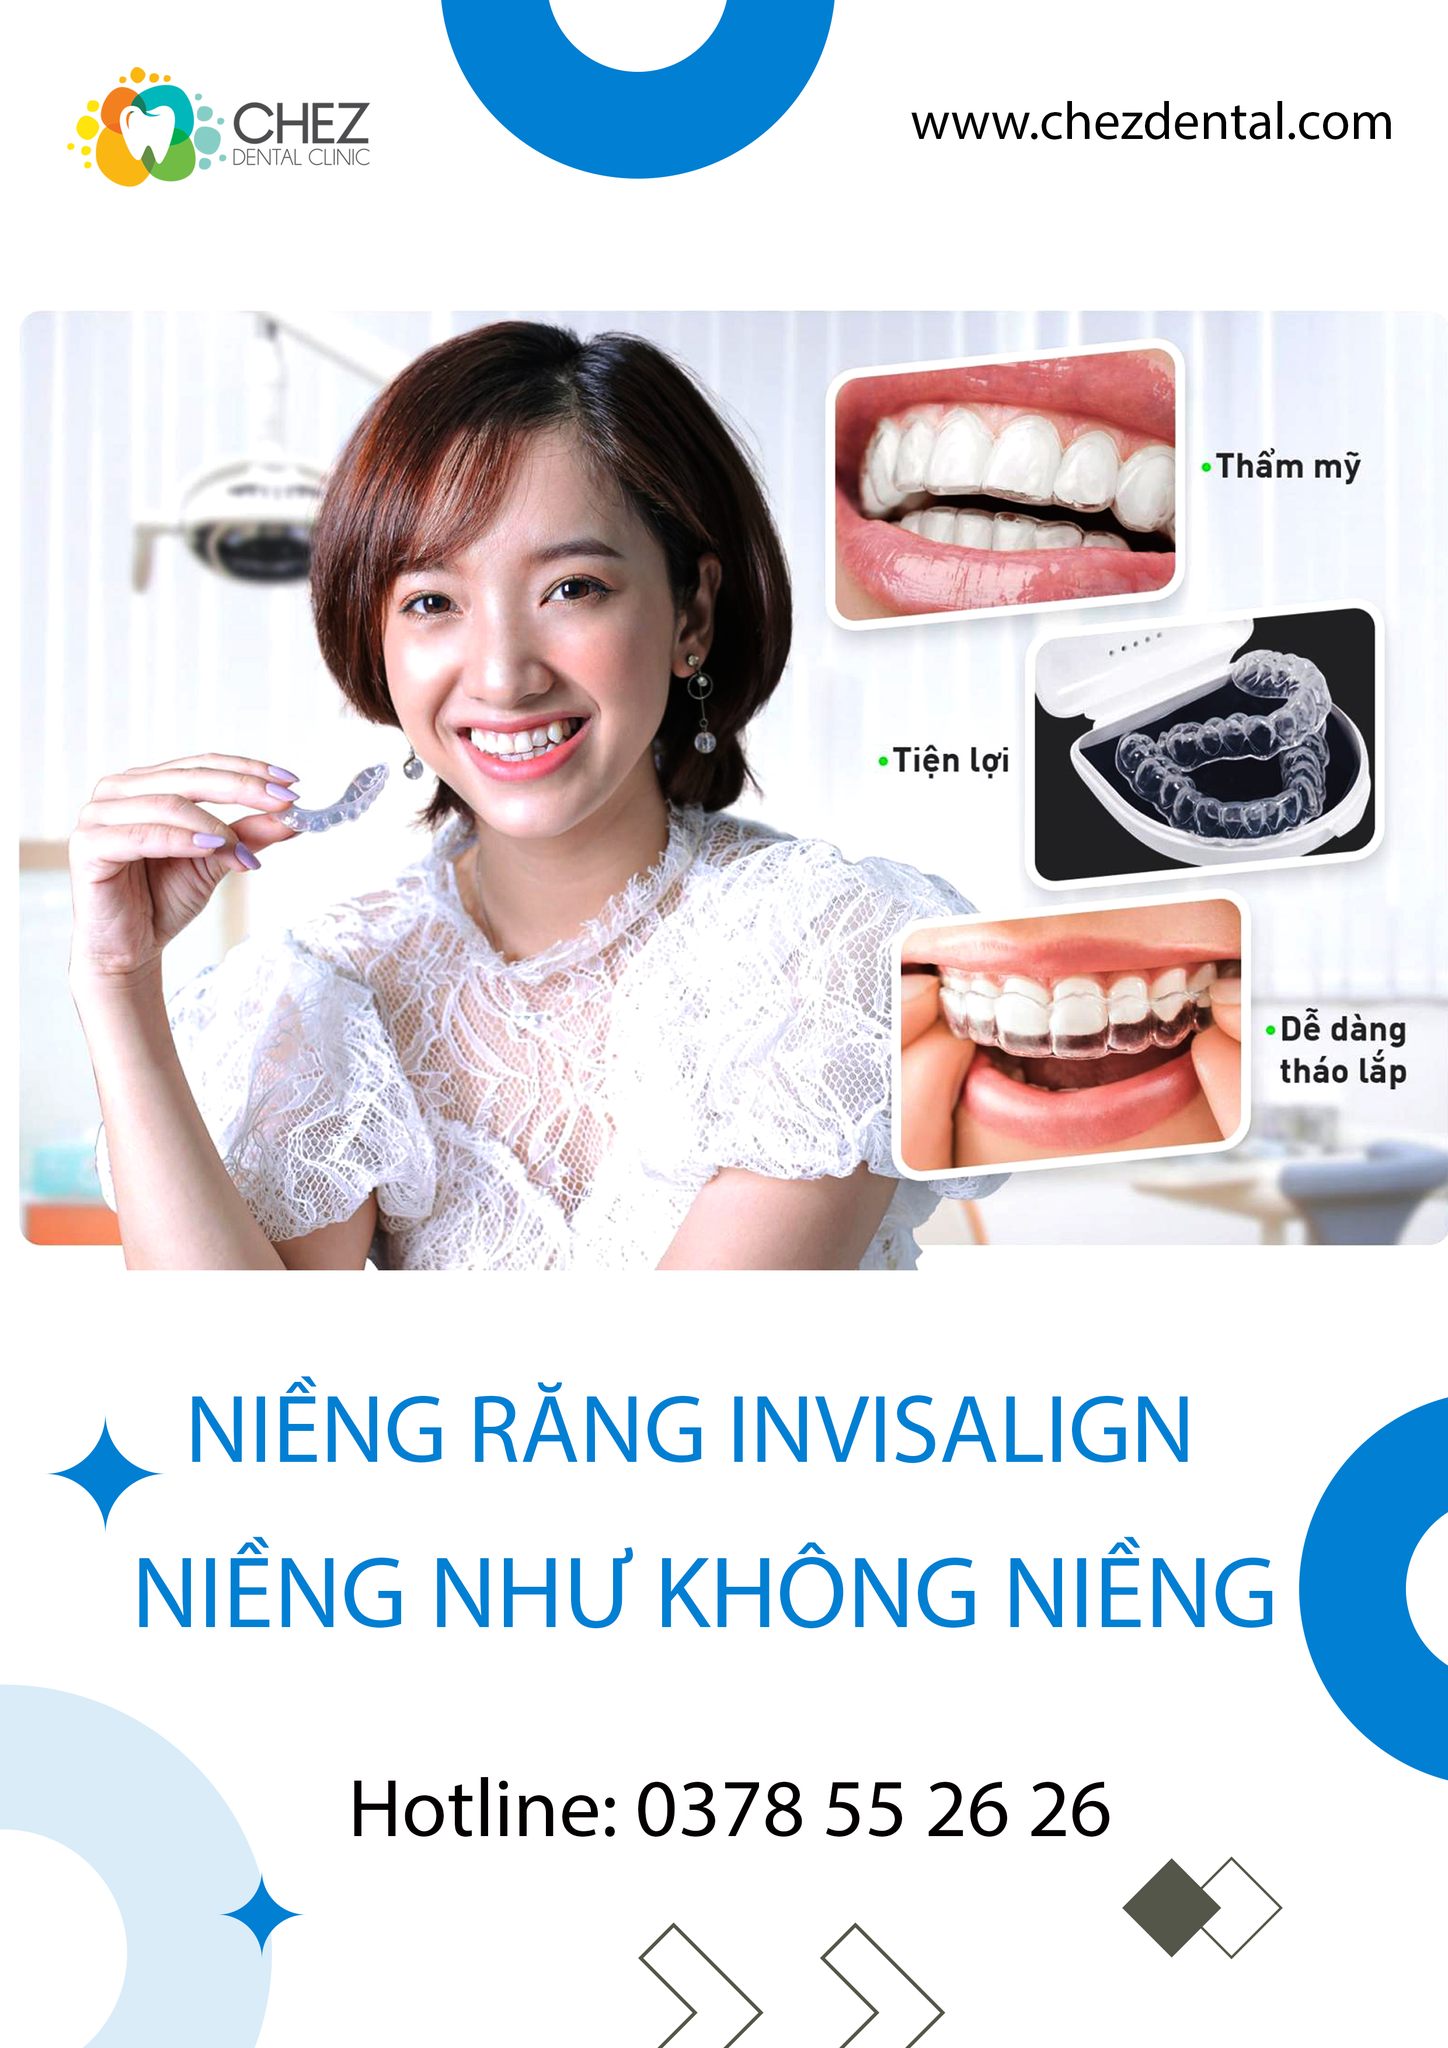 Chez Dental Clinic – Nha khoa Quảng Ngãi uy tín